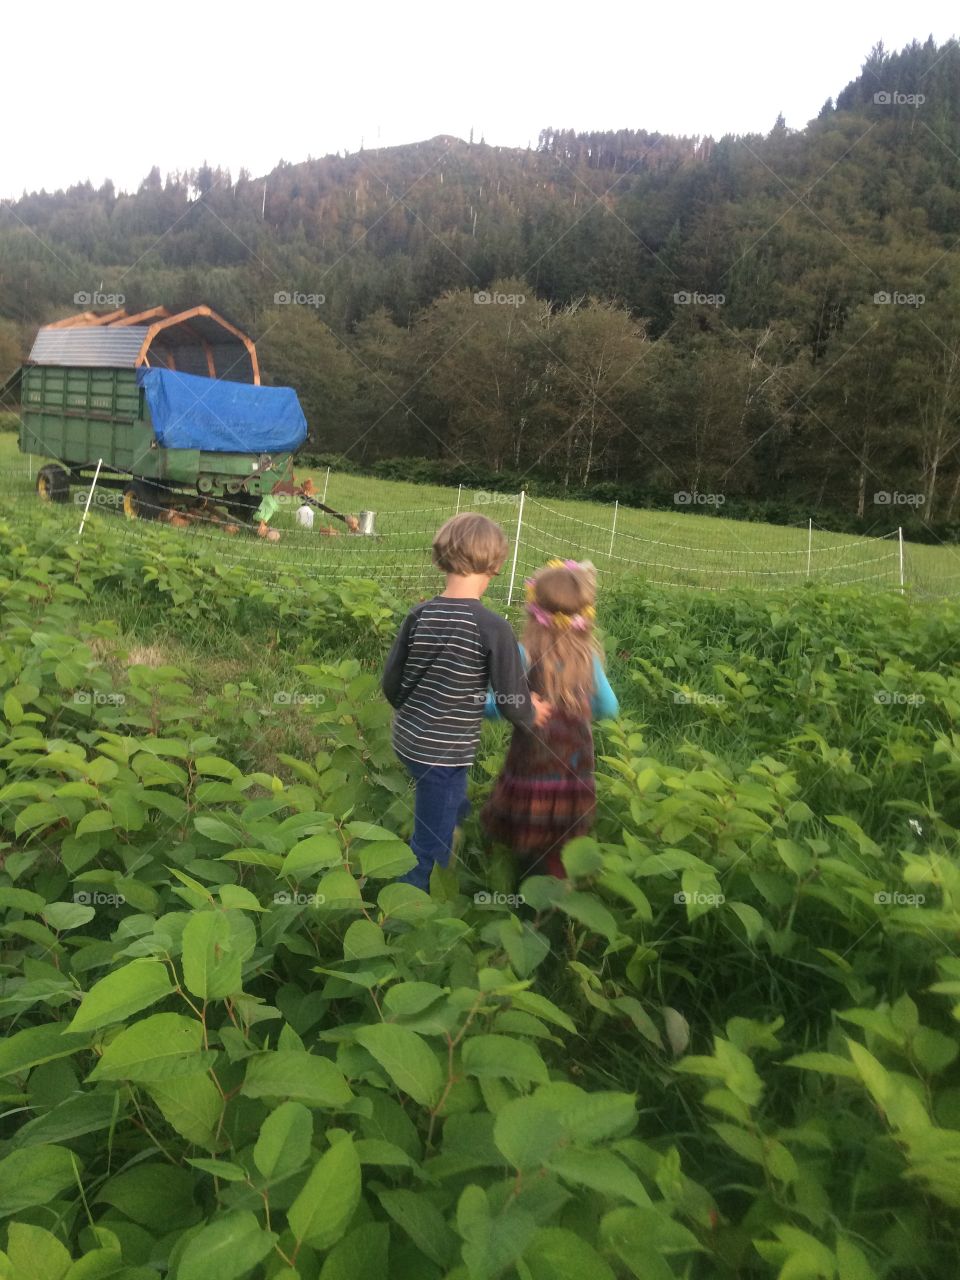 Children in pasture. Children in field